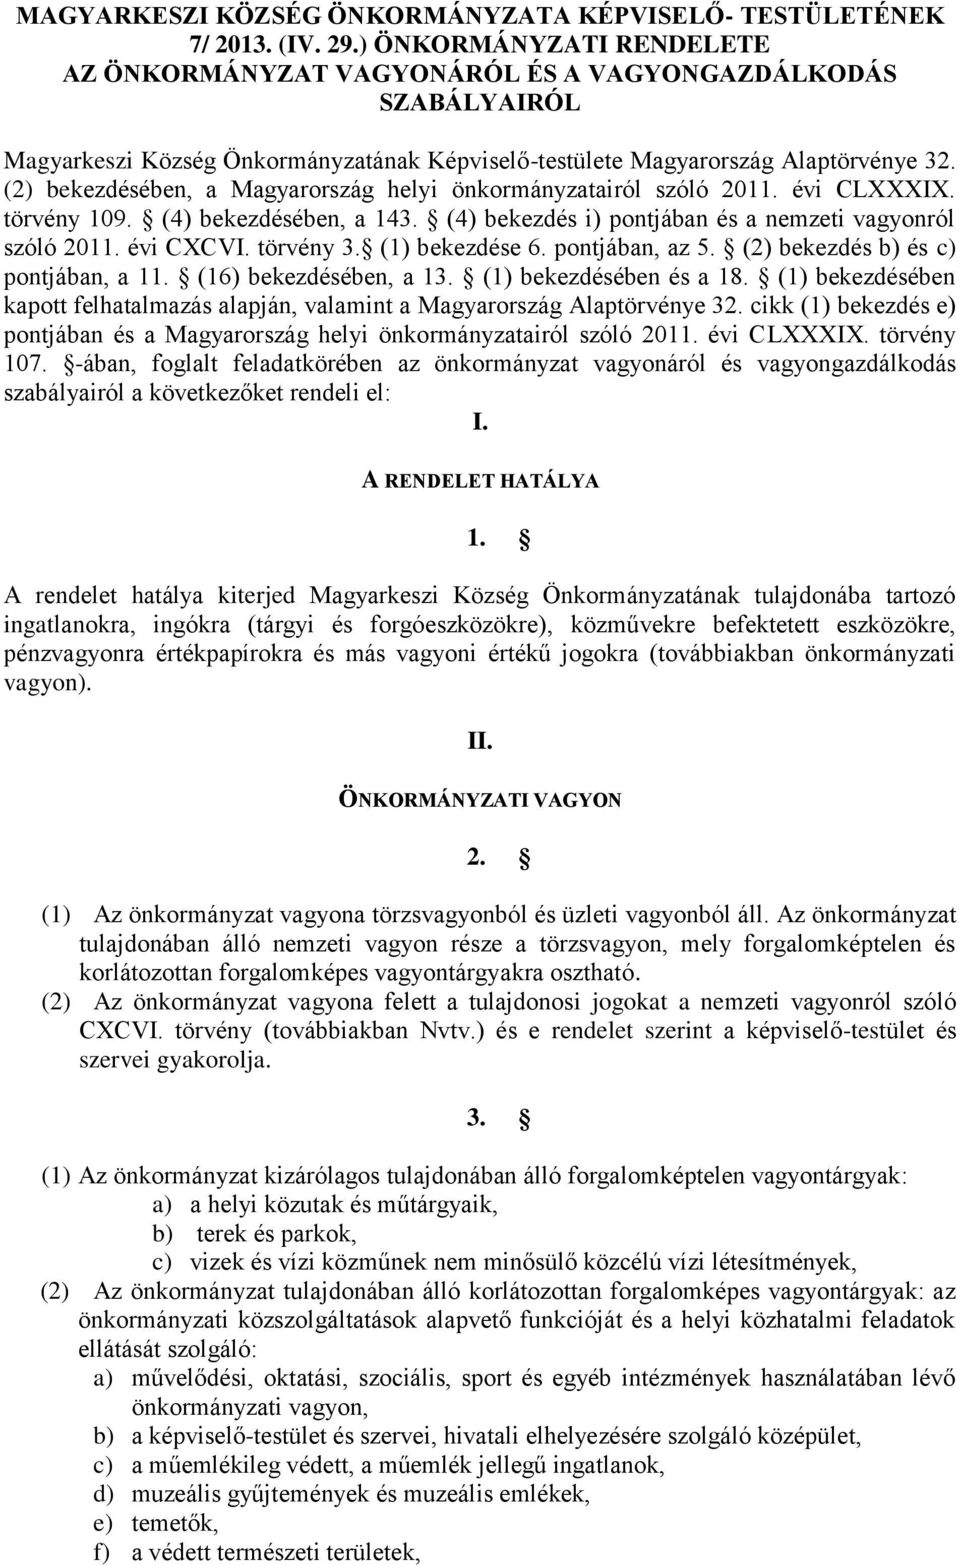 (2) bekezdésében, a Magyarország helyi önkormányzatairól szóló 2011. évi CLXXXIX. törvény 109. (4) bekezdésében, a 143. (4) bekezdés i) pontjában és a nemzeti vagyonról szóló 2011. évi CXCVI.